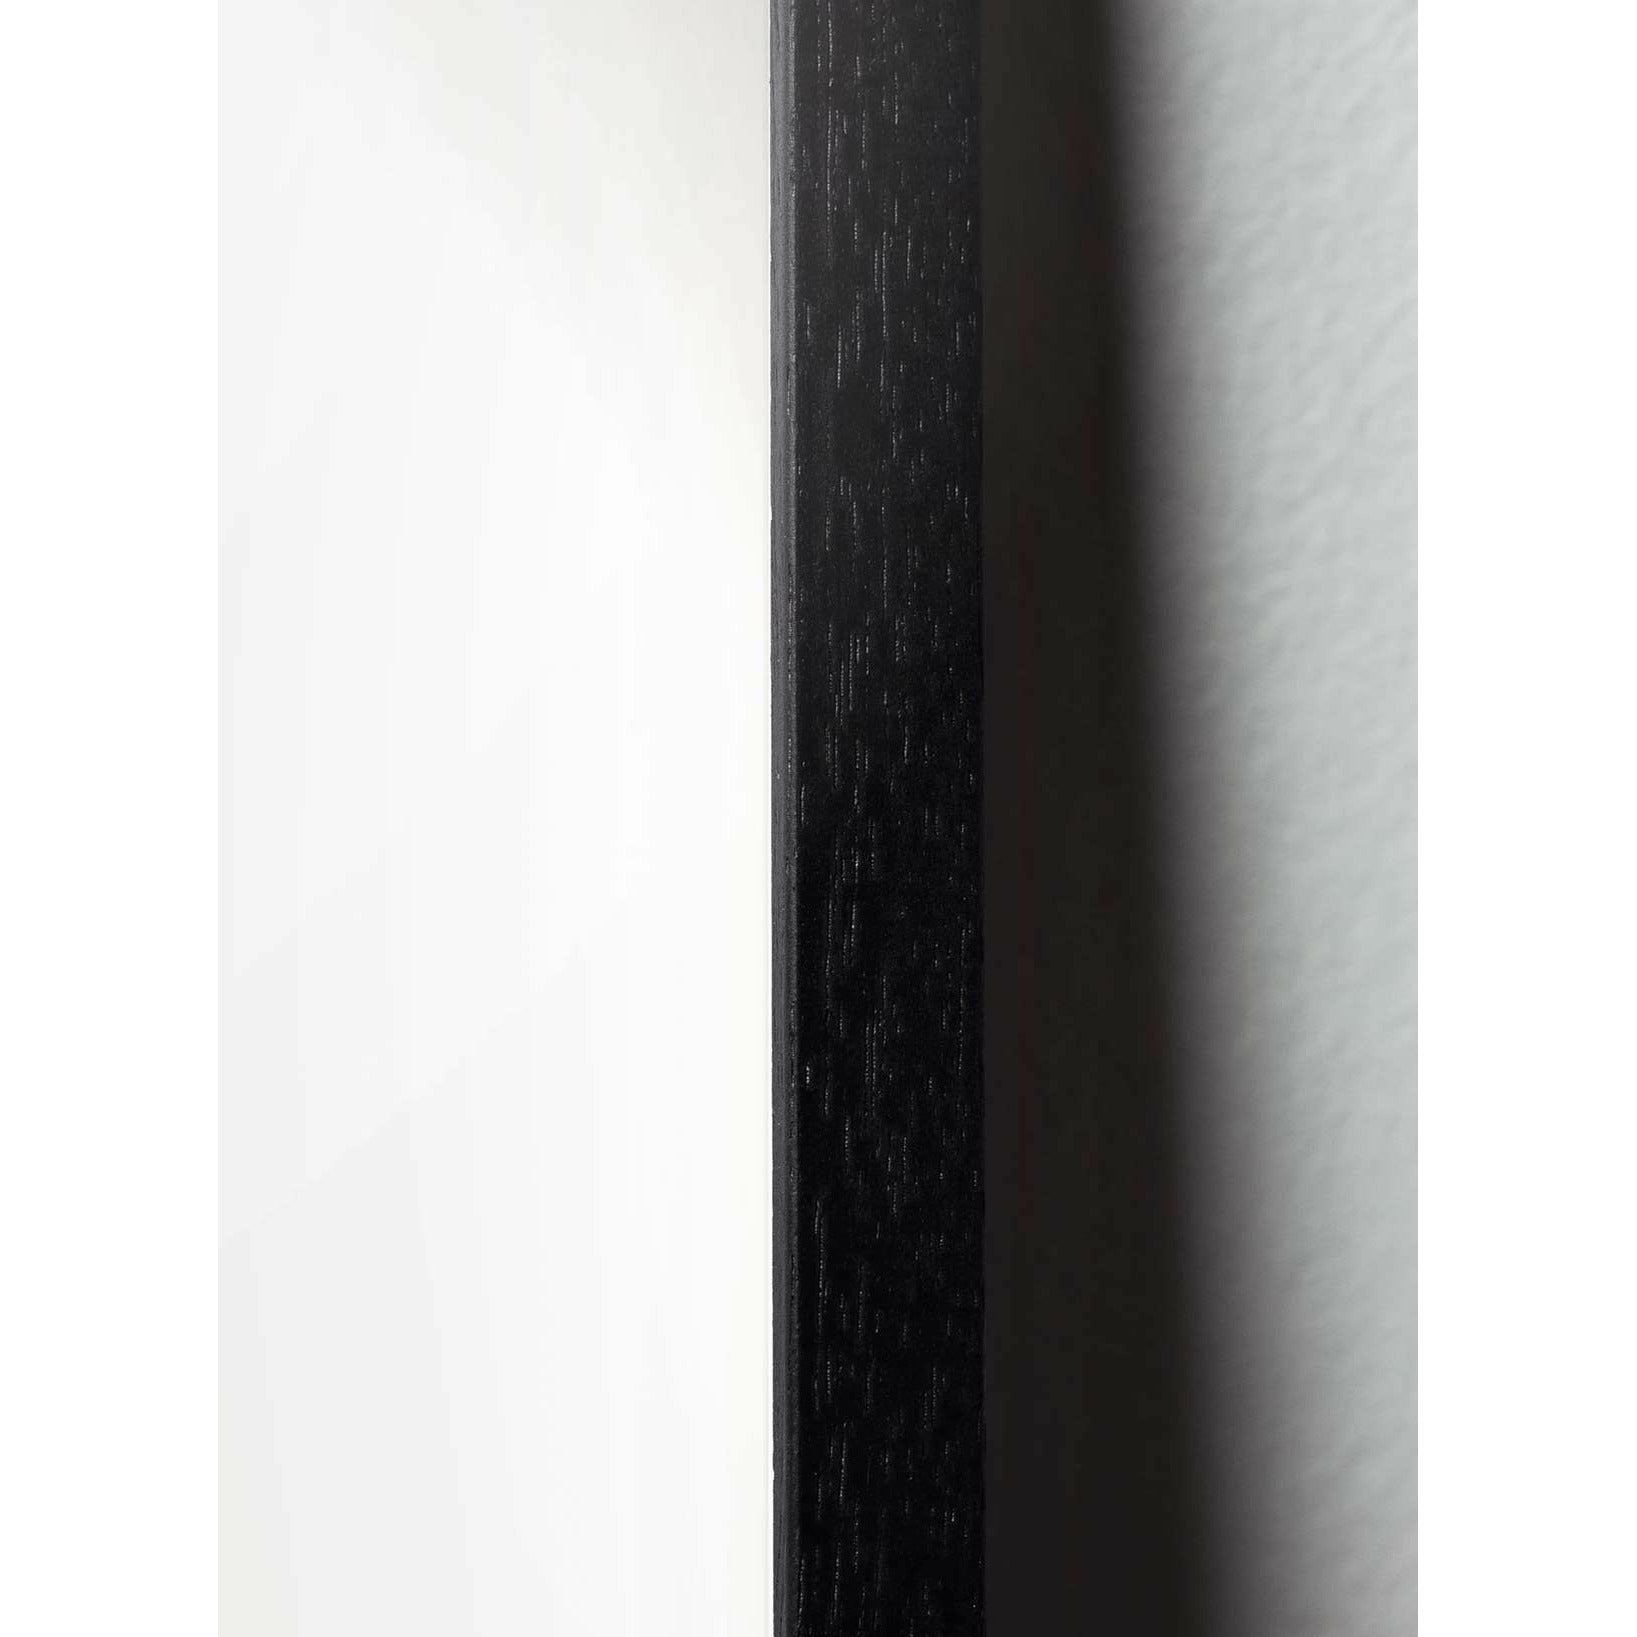 Pomysły Pine Classic Plakat, rama w czarnym lakierowanym drewnie A5, ciemnoniebieskie tło